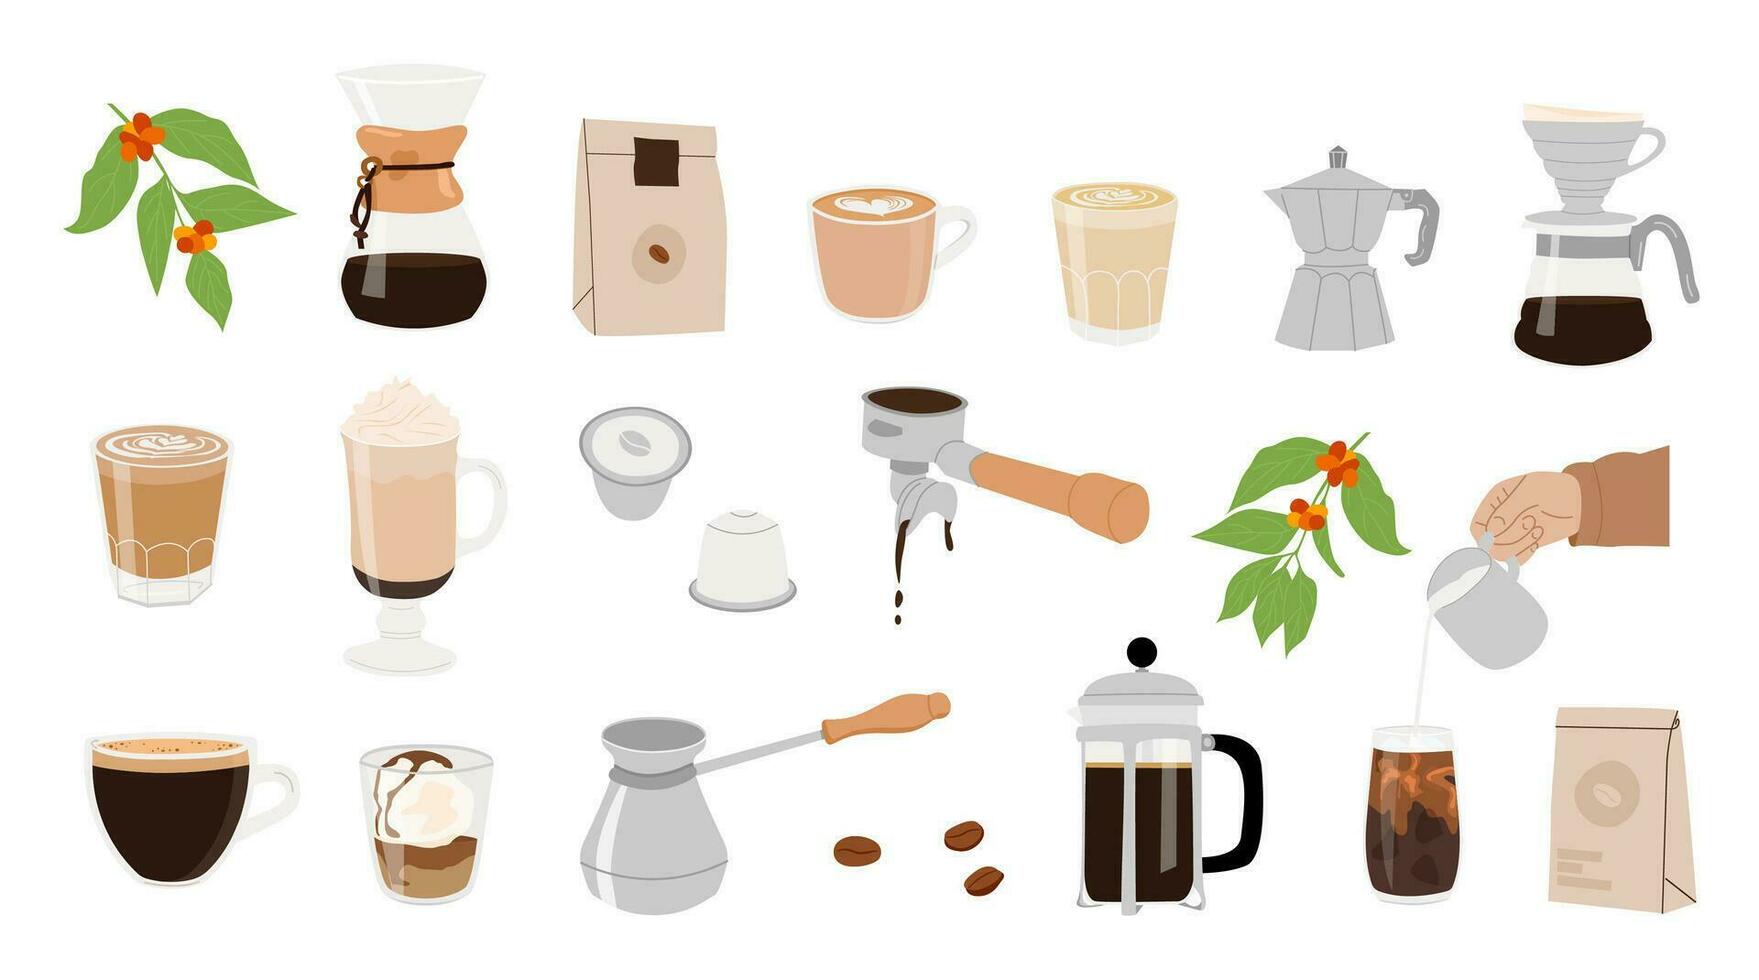 colección de café equipo para manual elaborar cerveza métodos aislado vector imágenes prediseñadas mano dibujado ilustraciones para café tienda. diferente tipo de café tazas, verter encima, francés prensa, aeropress, sifón.